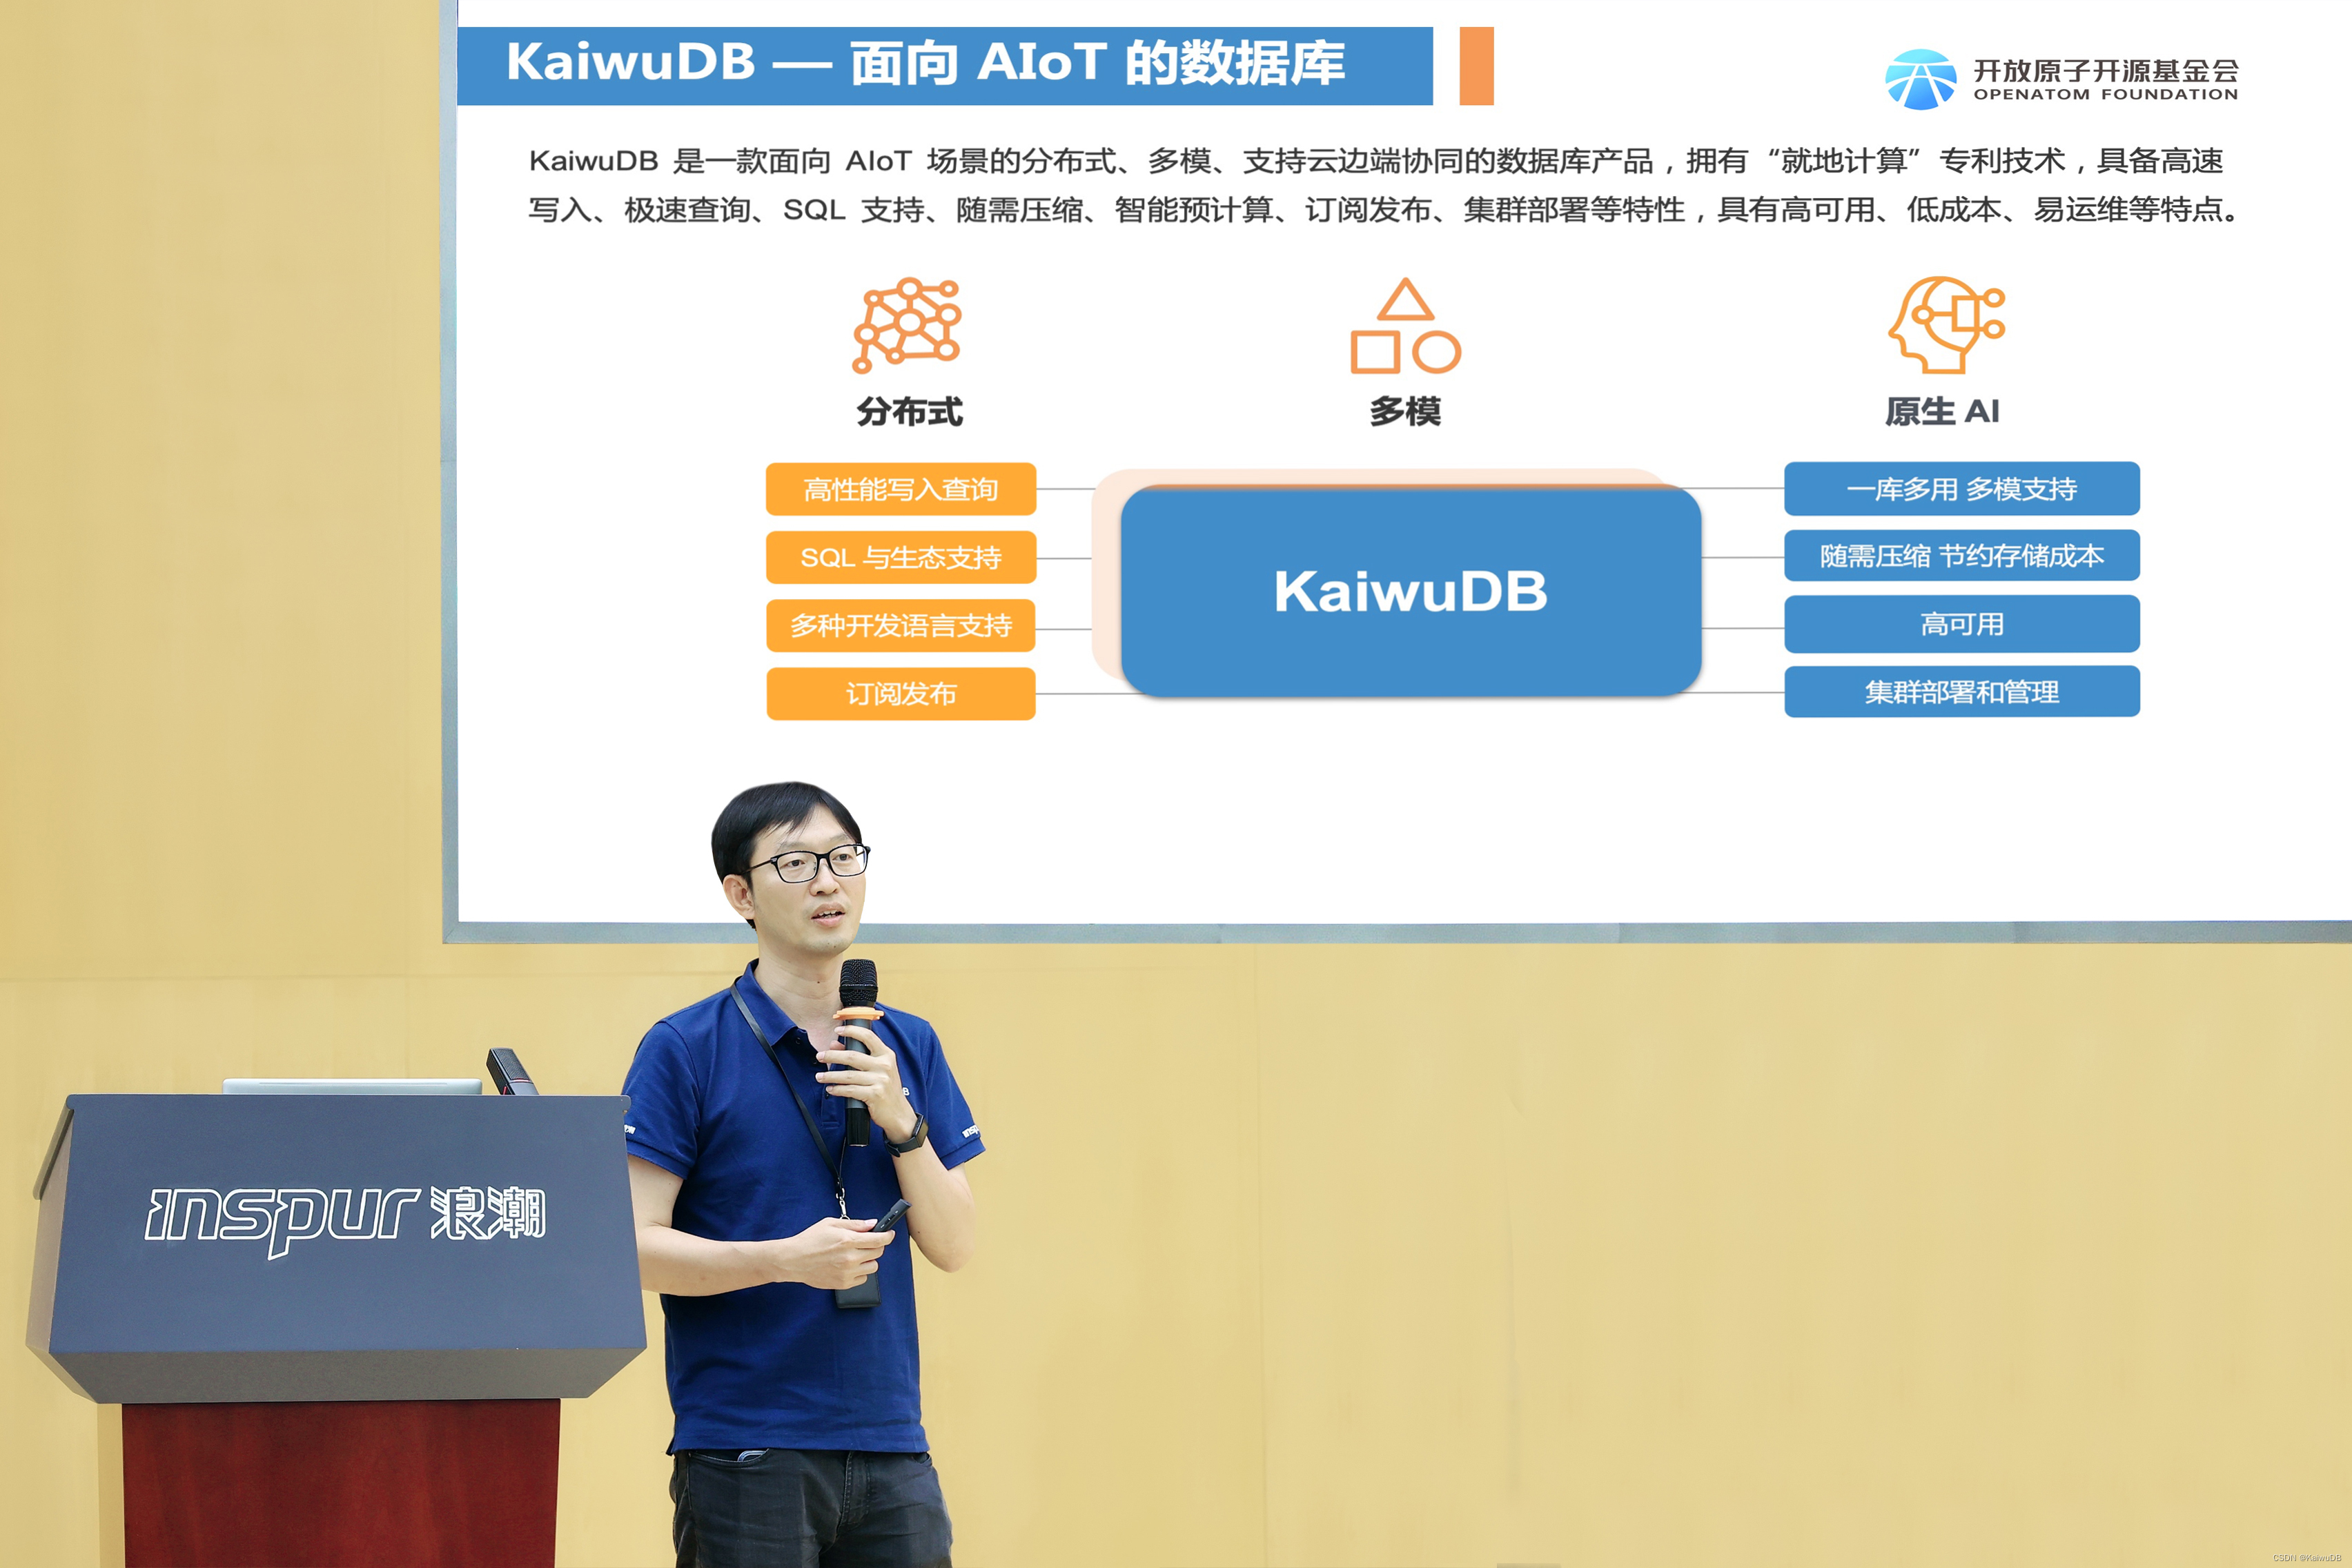 Wei Kewei, CTO von KaiwuDB, hielt eine Grundsatzrede